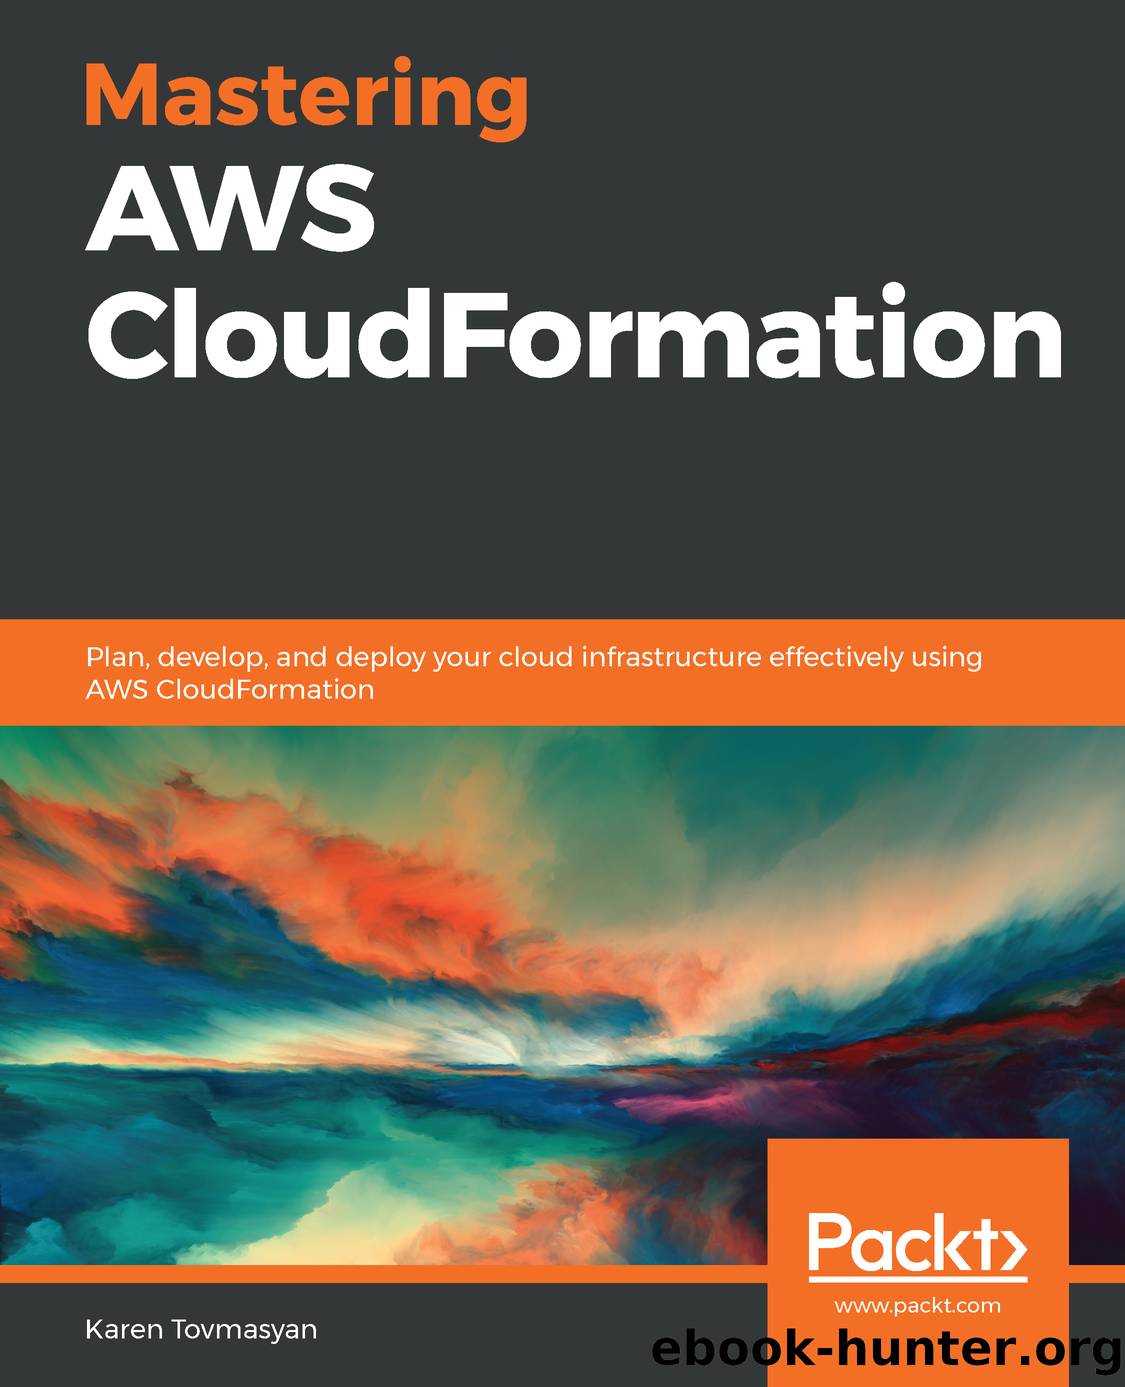 Mastering AWS CloudFormation by Karen Tovmasyan